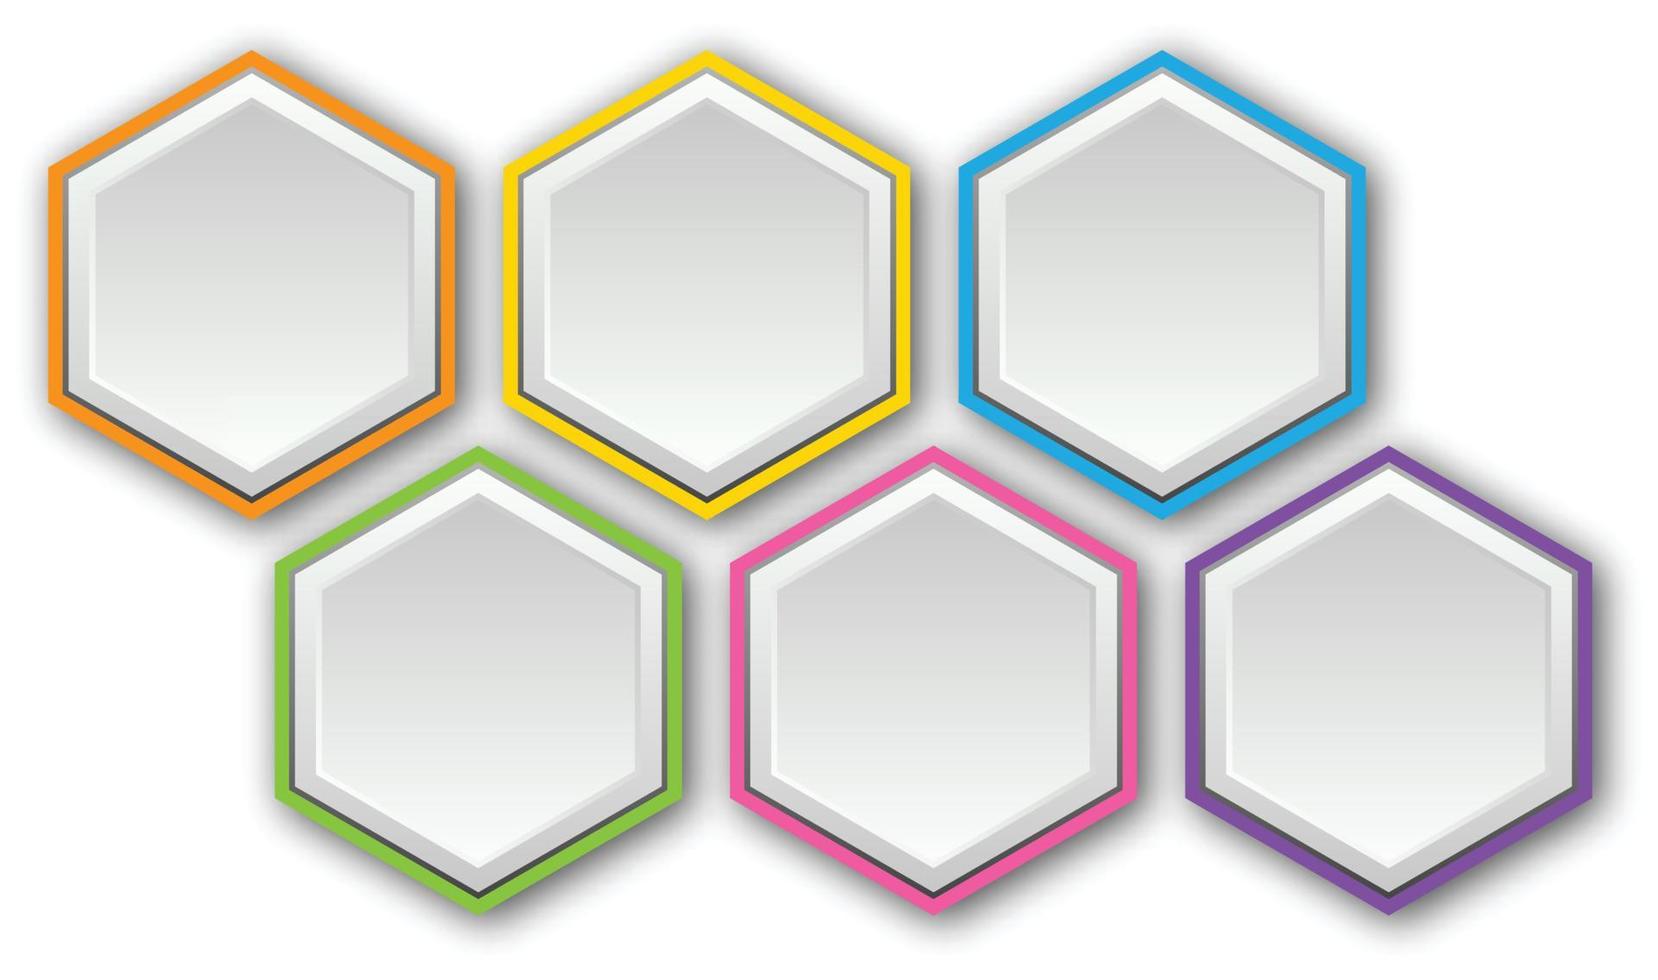 fond de vecteur de notes rondes en papier. 6 illustration colorée de papier blanc hexagonal